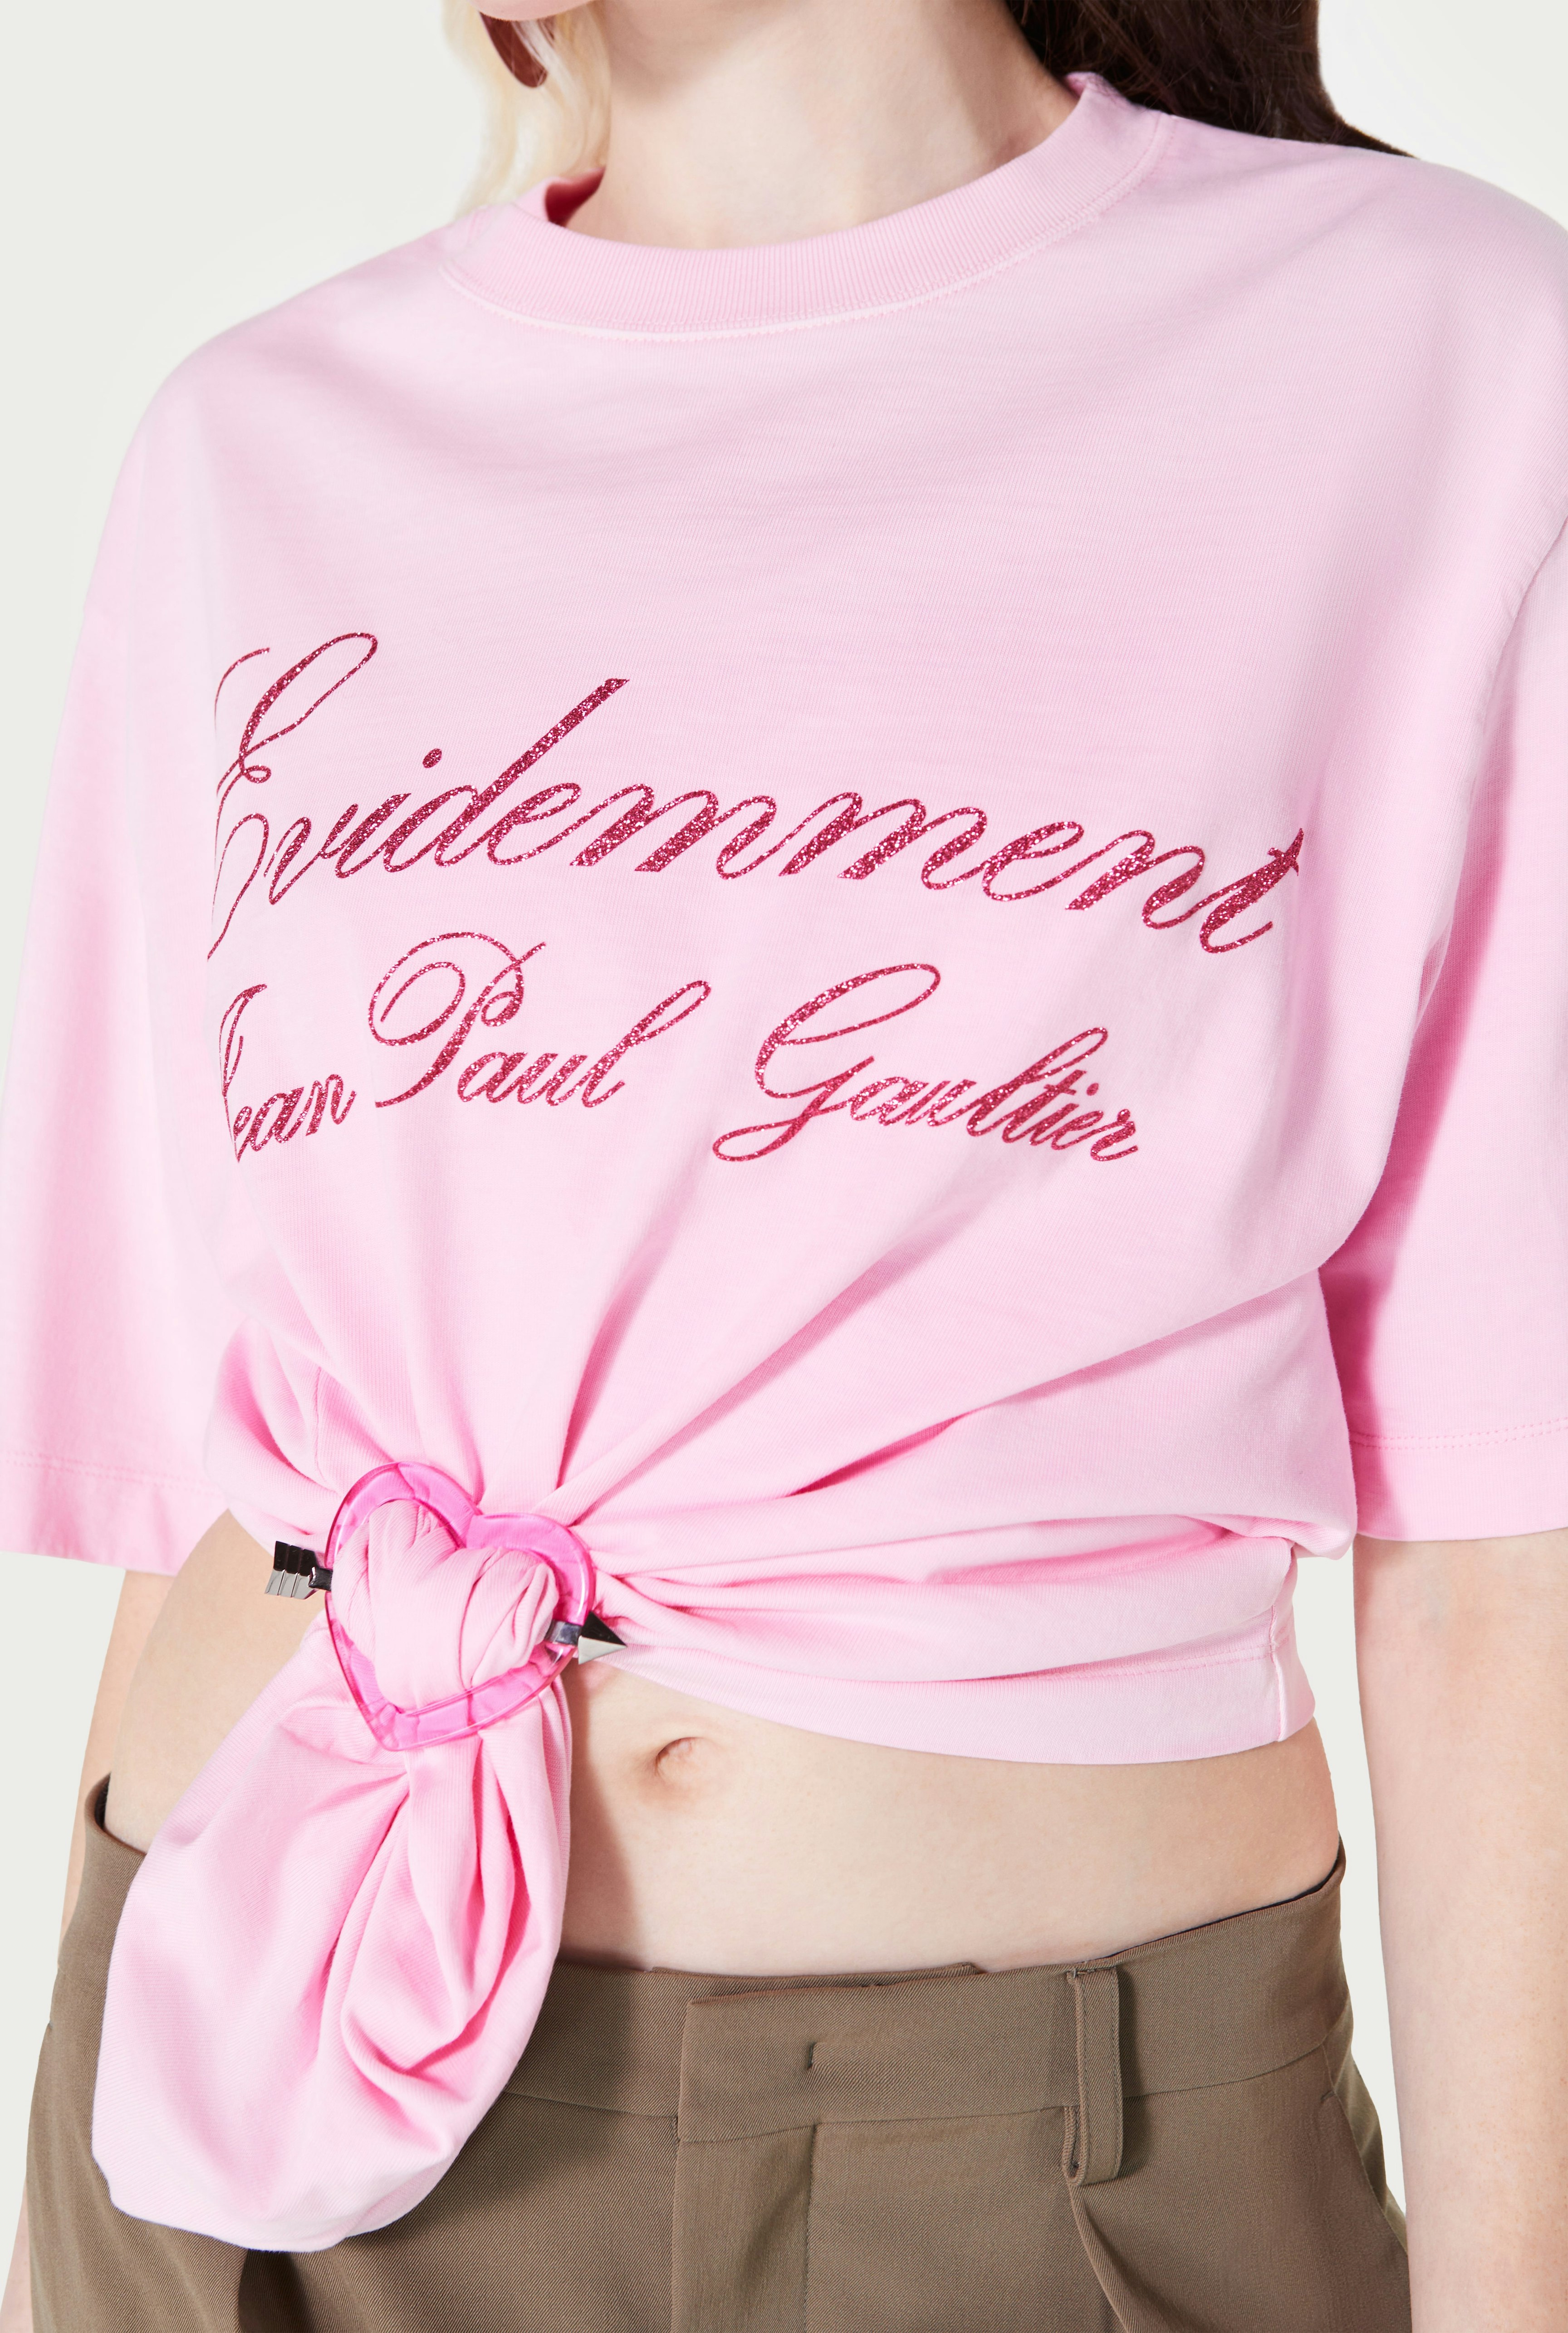 The pink Heart Buckle Jean Paul Gaultier